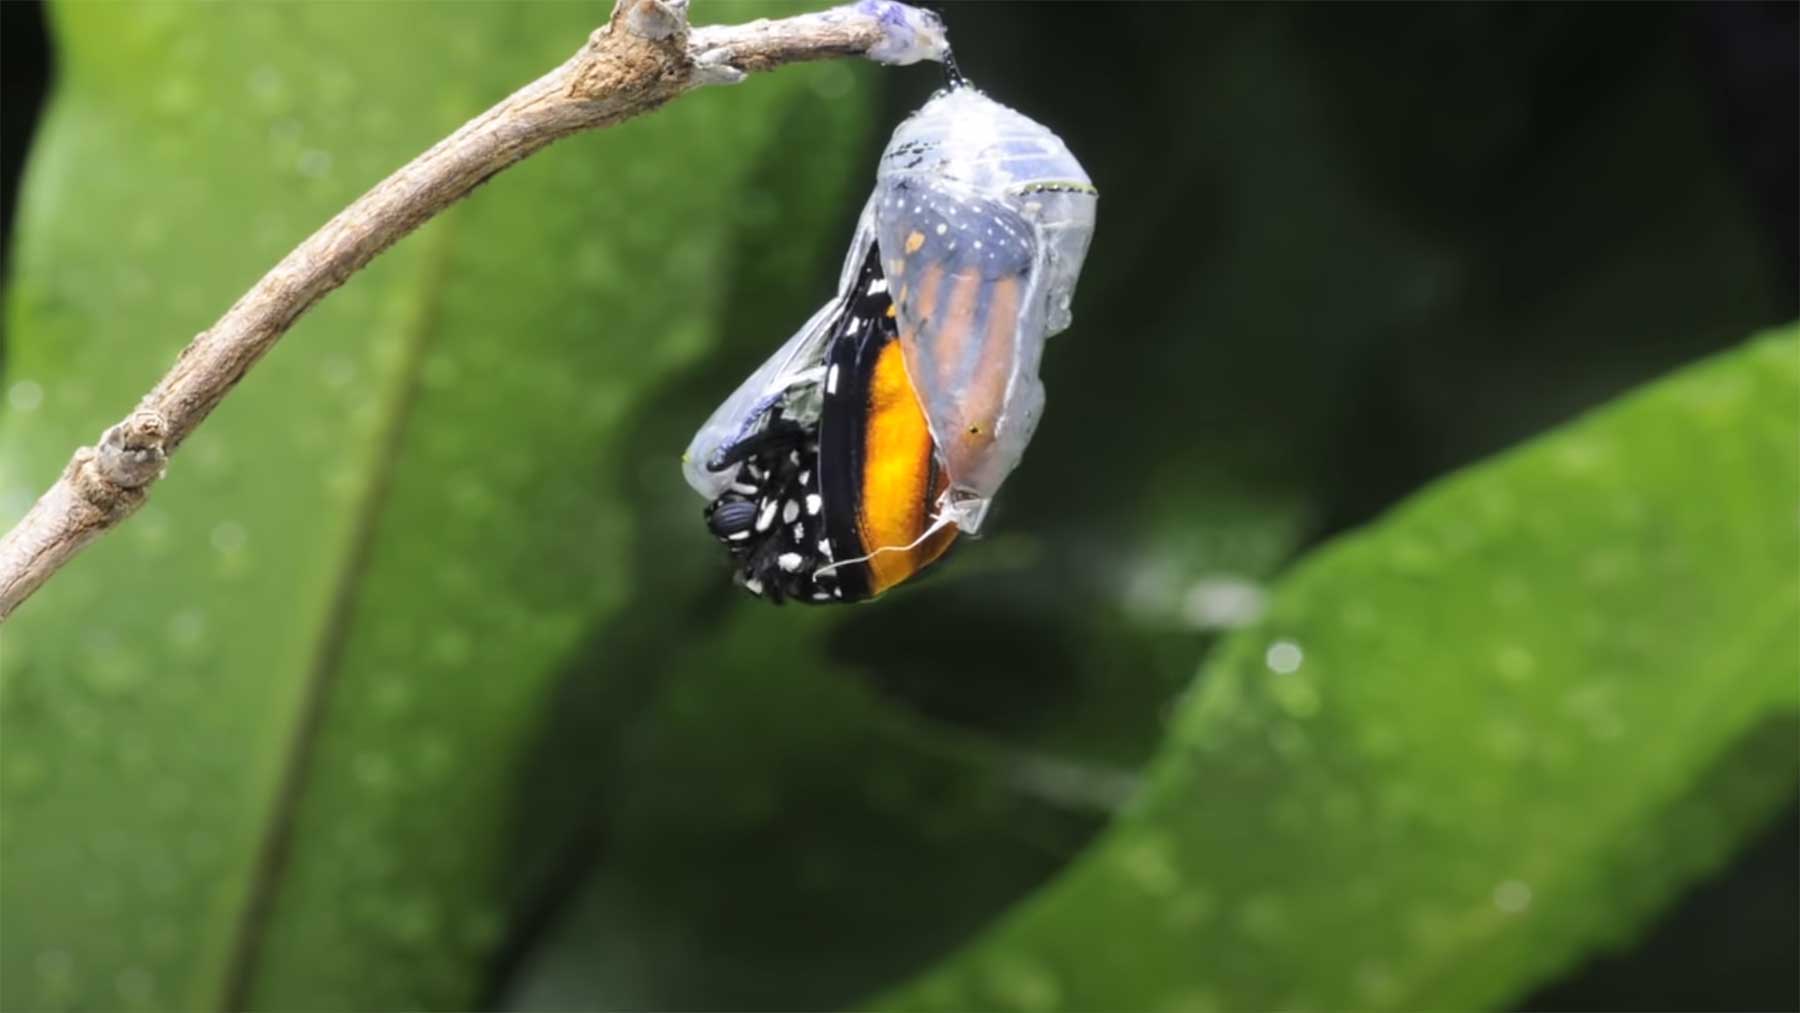 Timelapse-Video eines schlüpfenden Schmetterlings